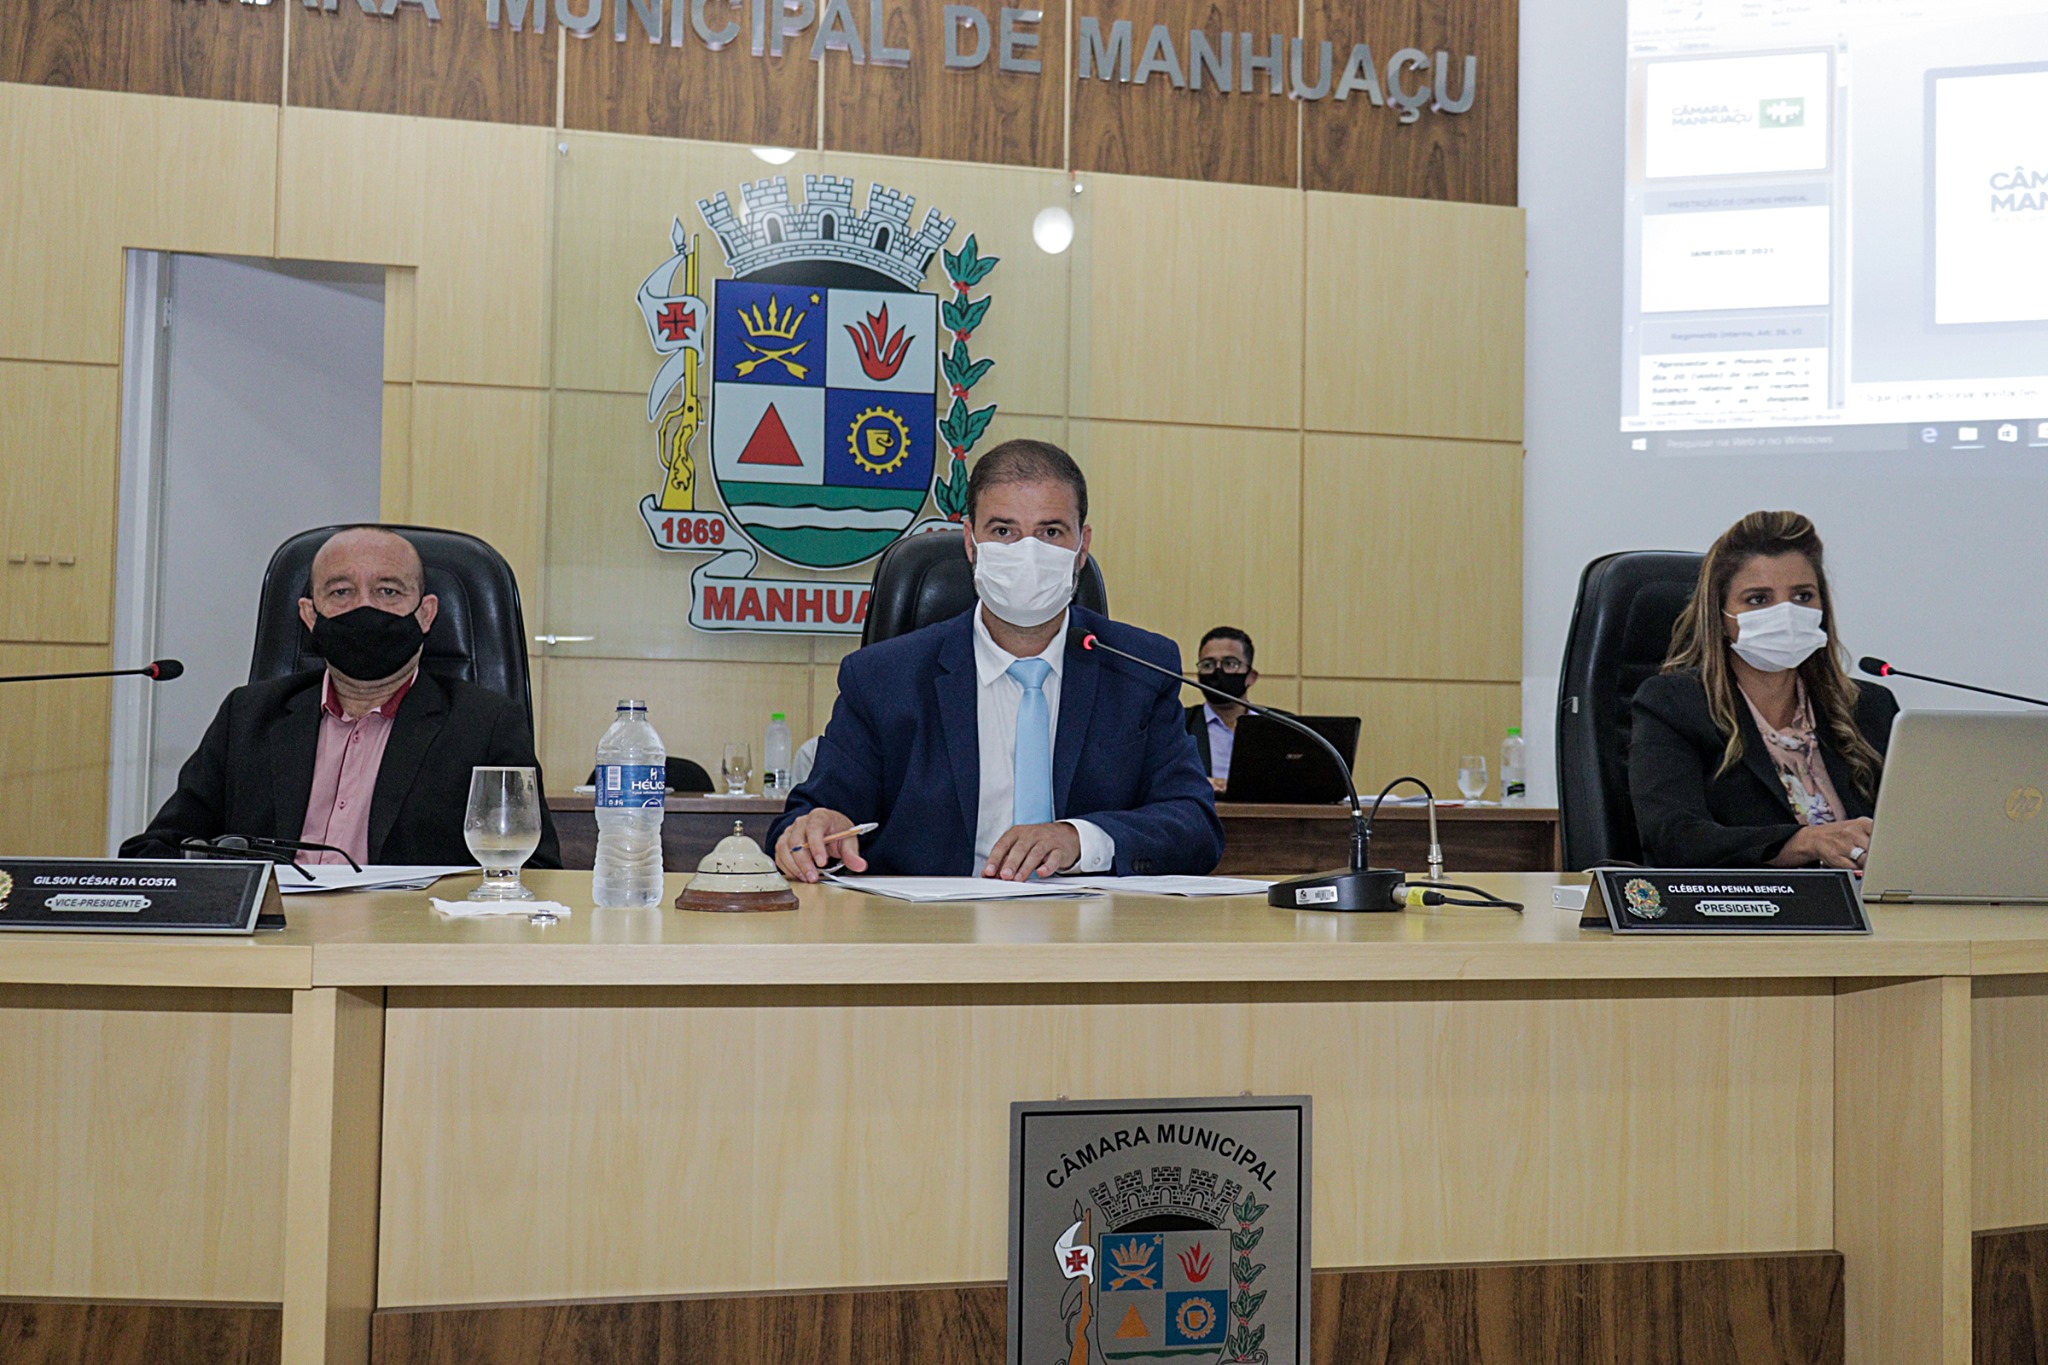 Prazo de 90 dias para suspensão do Concurso Público da Câmara de Manhuaçu termina no próximo dia 09